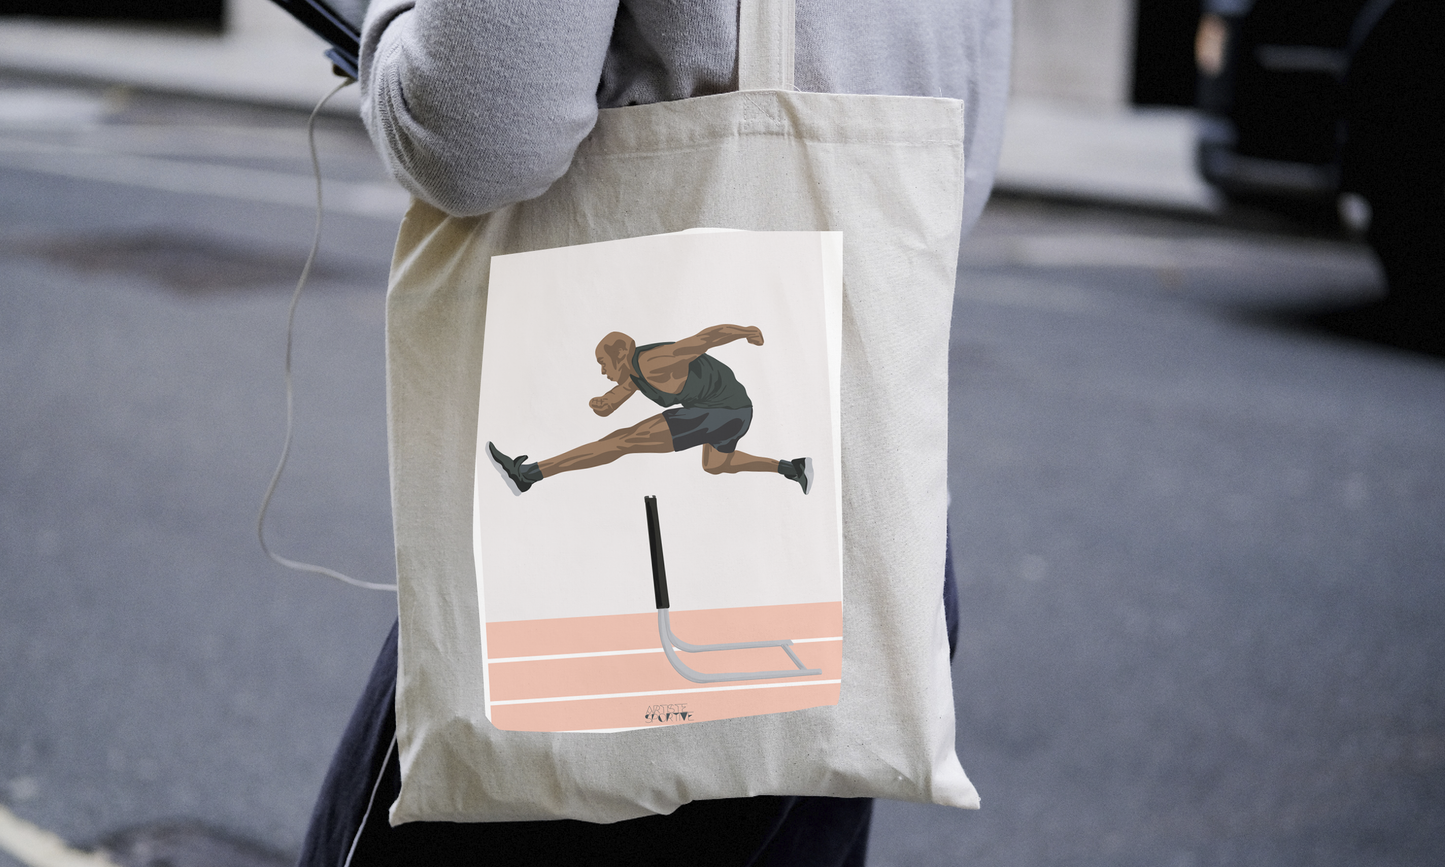 Tote bag or athletic bag "men's hurdle jump"